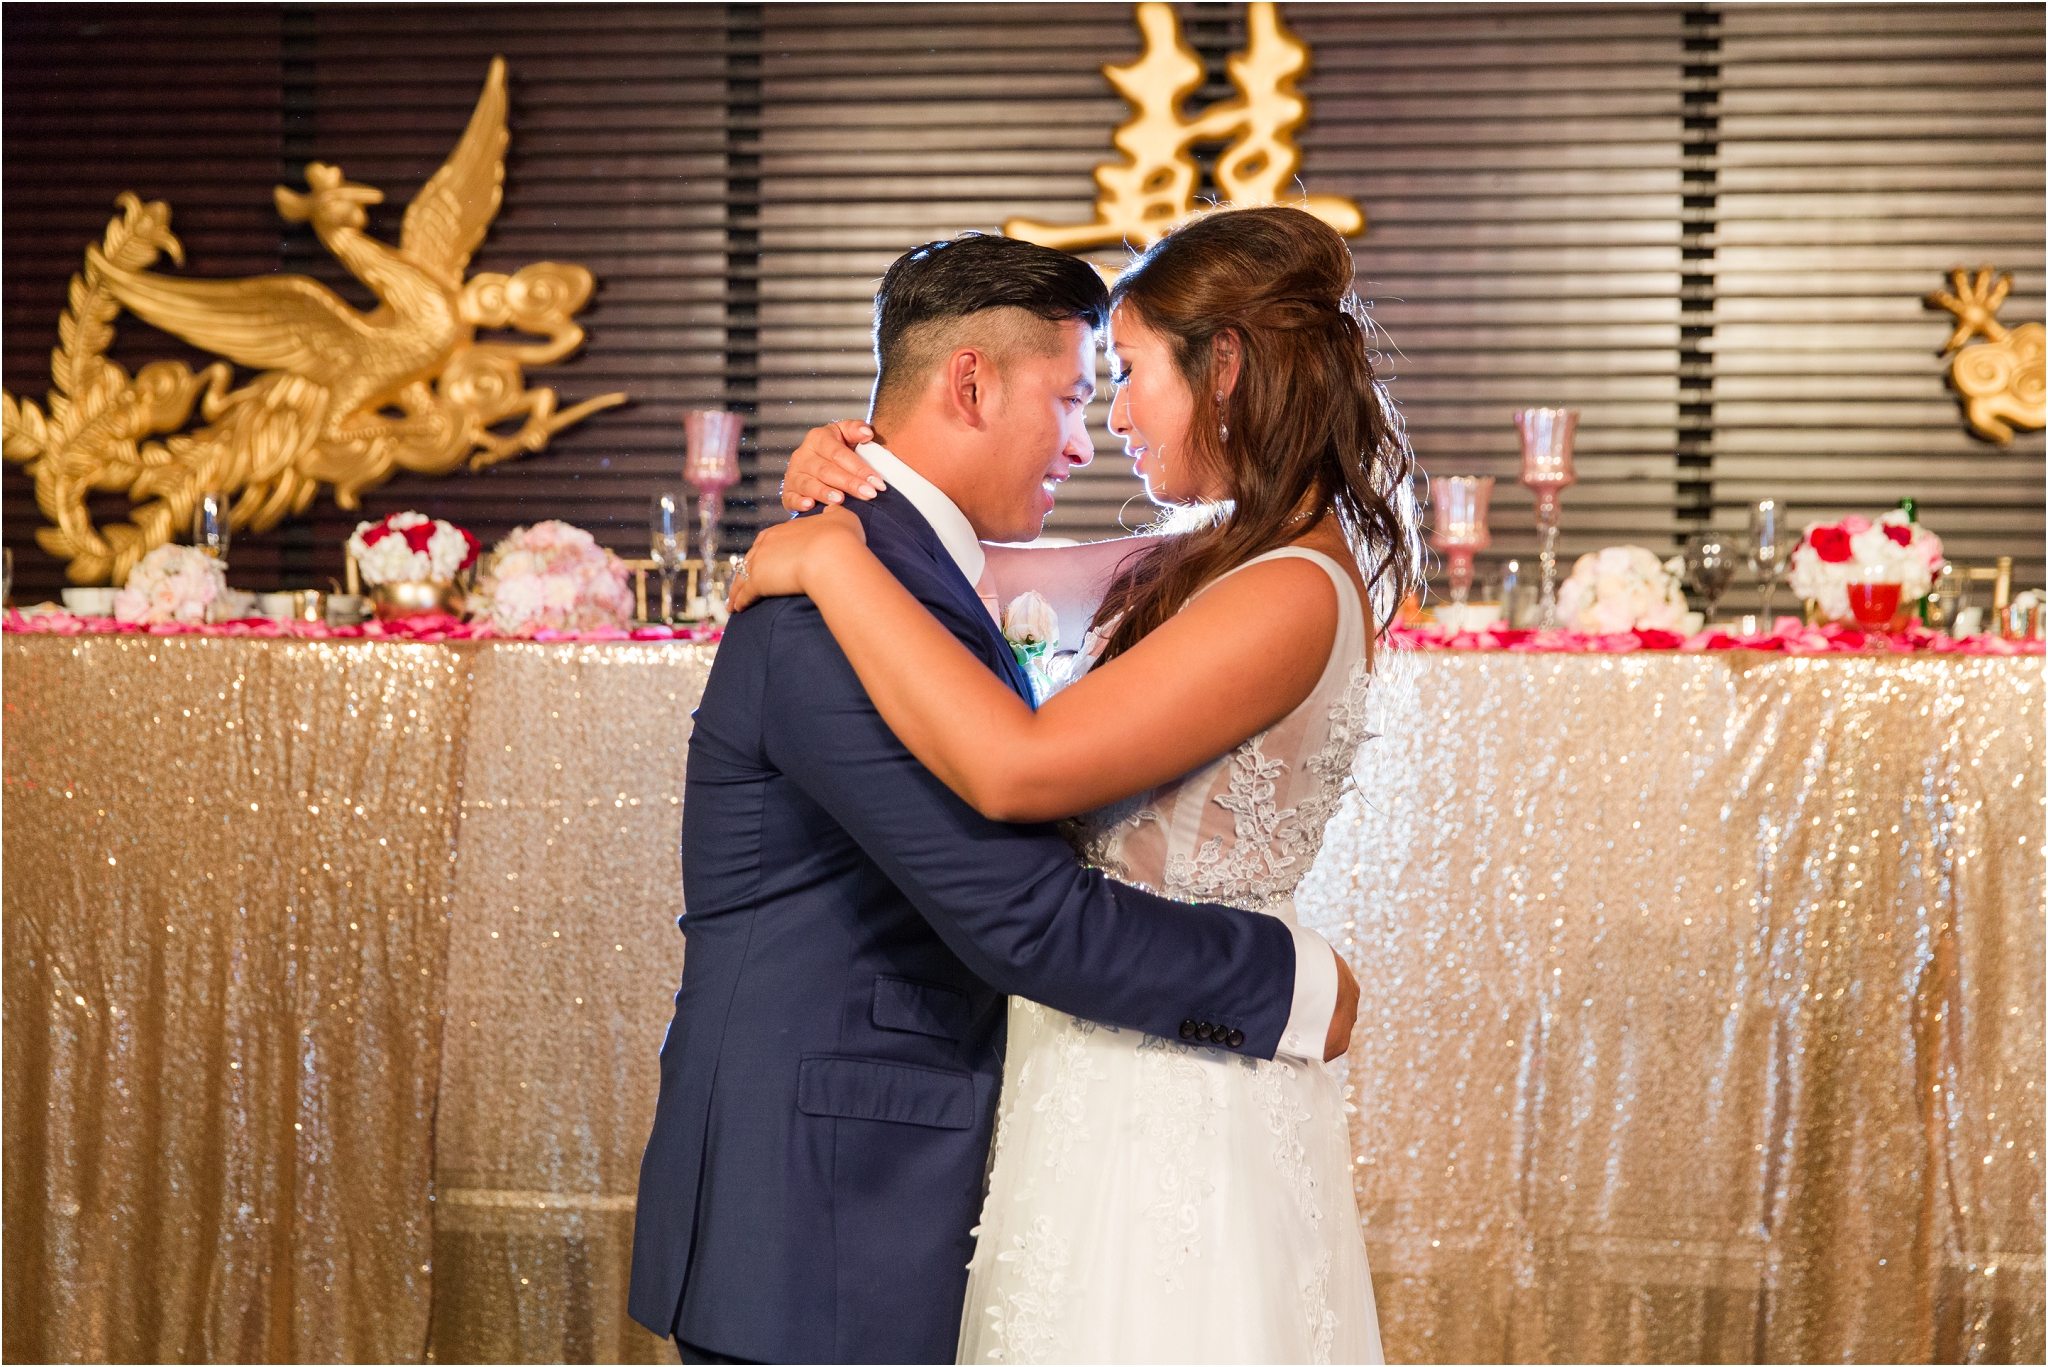 China Town Emperess Palace Wedding Photos